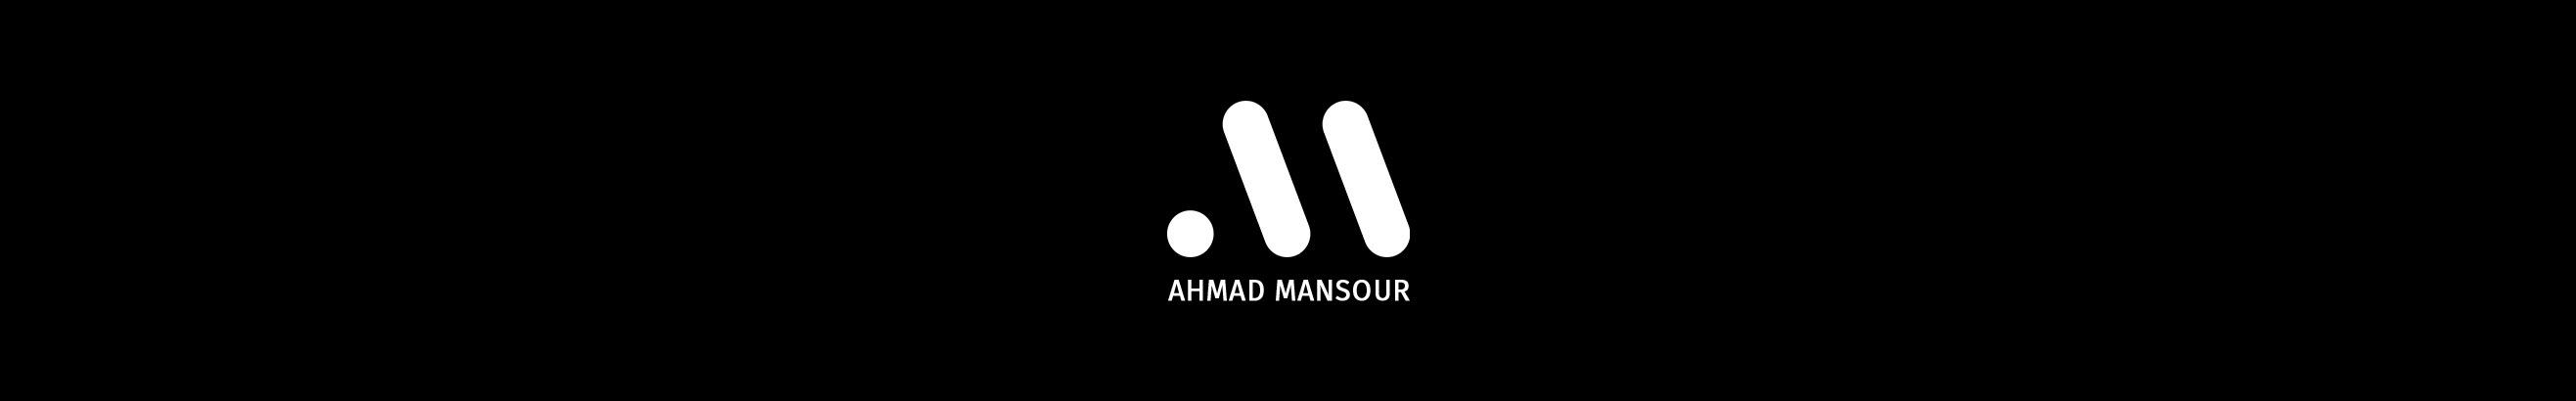 Ahmad Mansour's profile banner